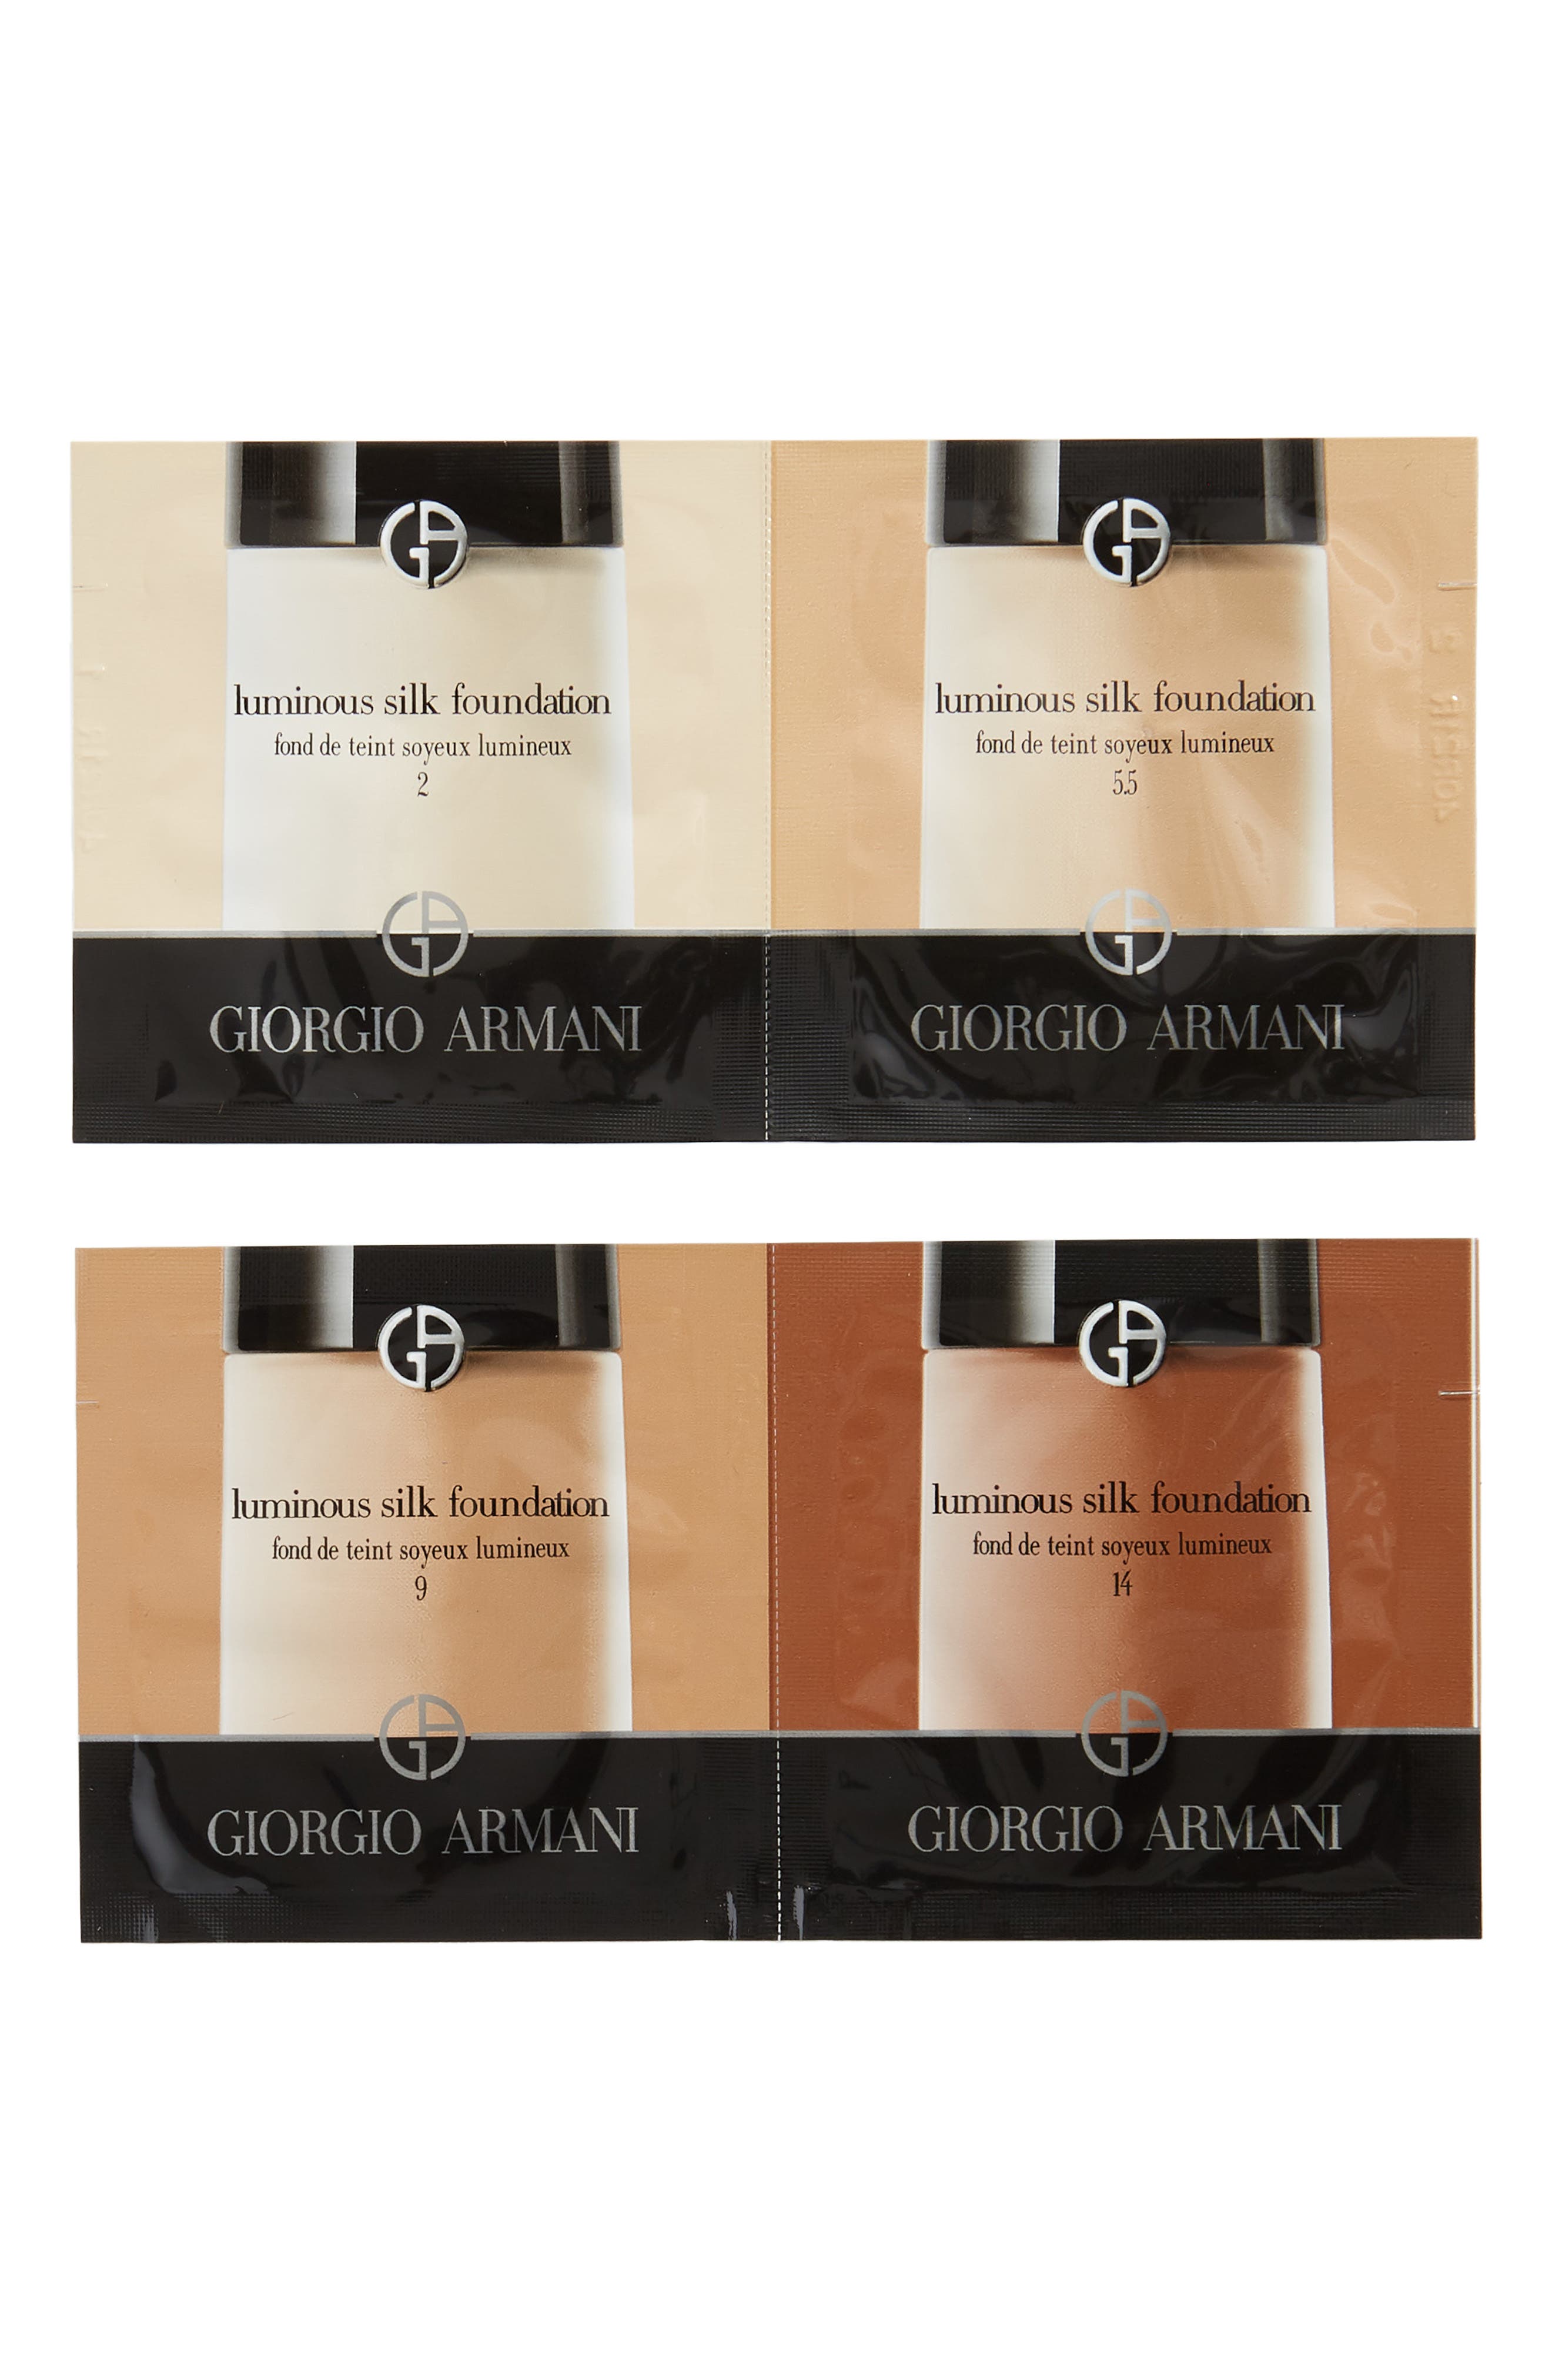 free sample of giorgio armani foundation